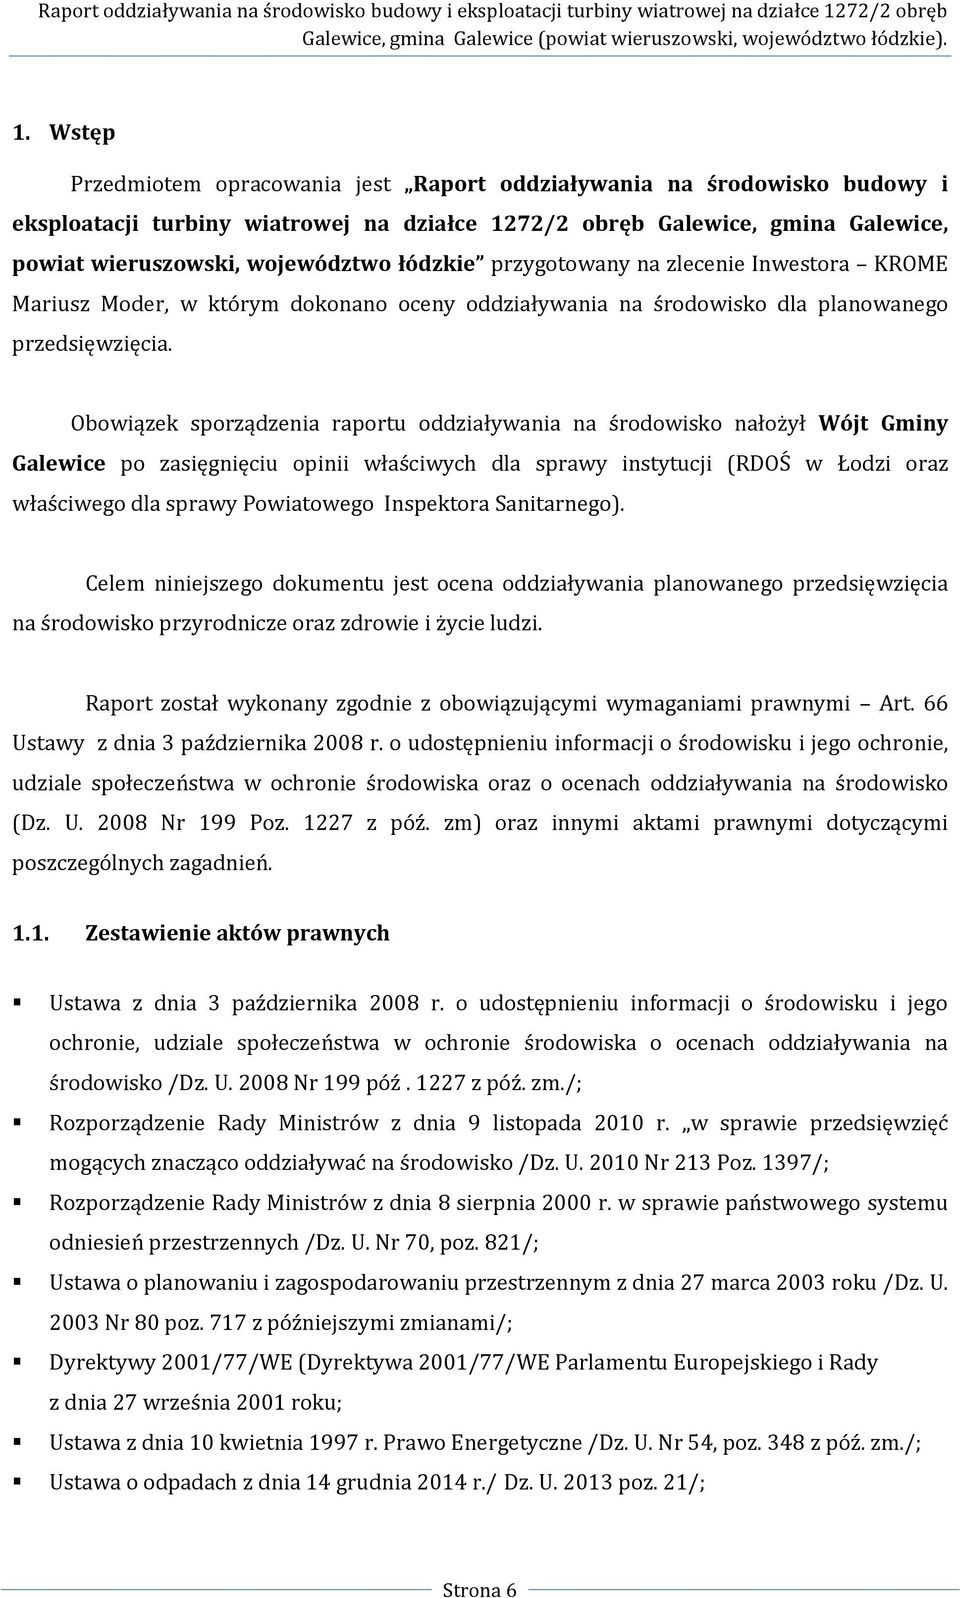 Obowiązek sporządzenia raportu oddziaływania na środowisko nałożył Wójt Gminy Galewice po zasięgnięciu opinii właściwych dla sprawy instytucji (RDOŚ w Łodzi oraz właściwego dla sprawy Powiatowego